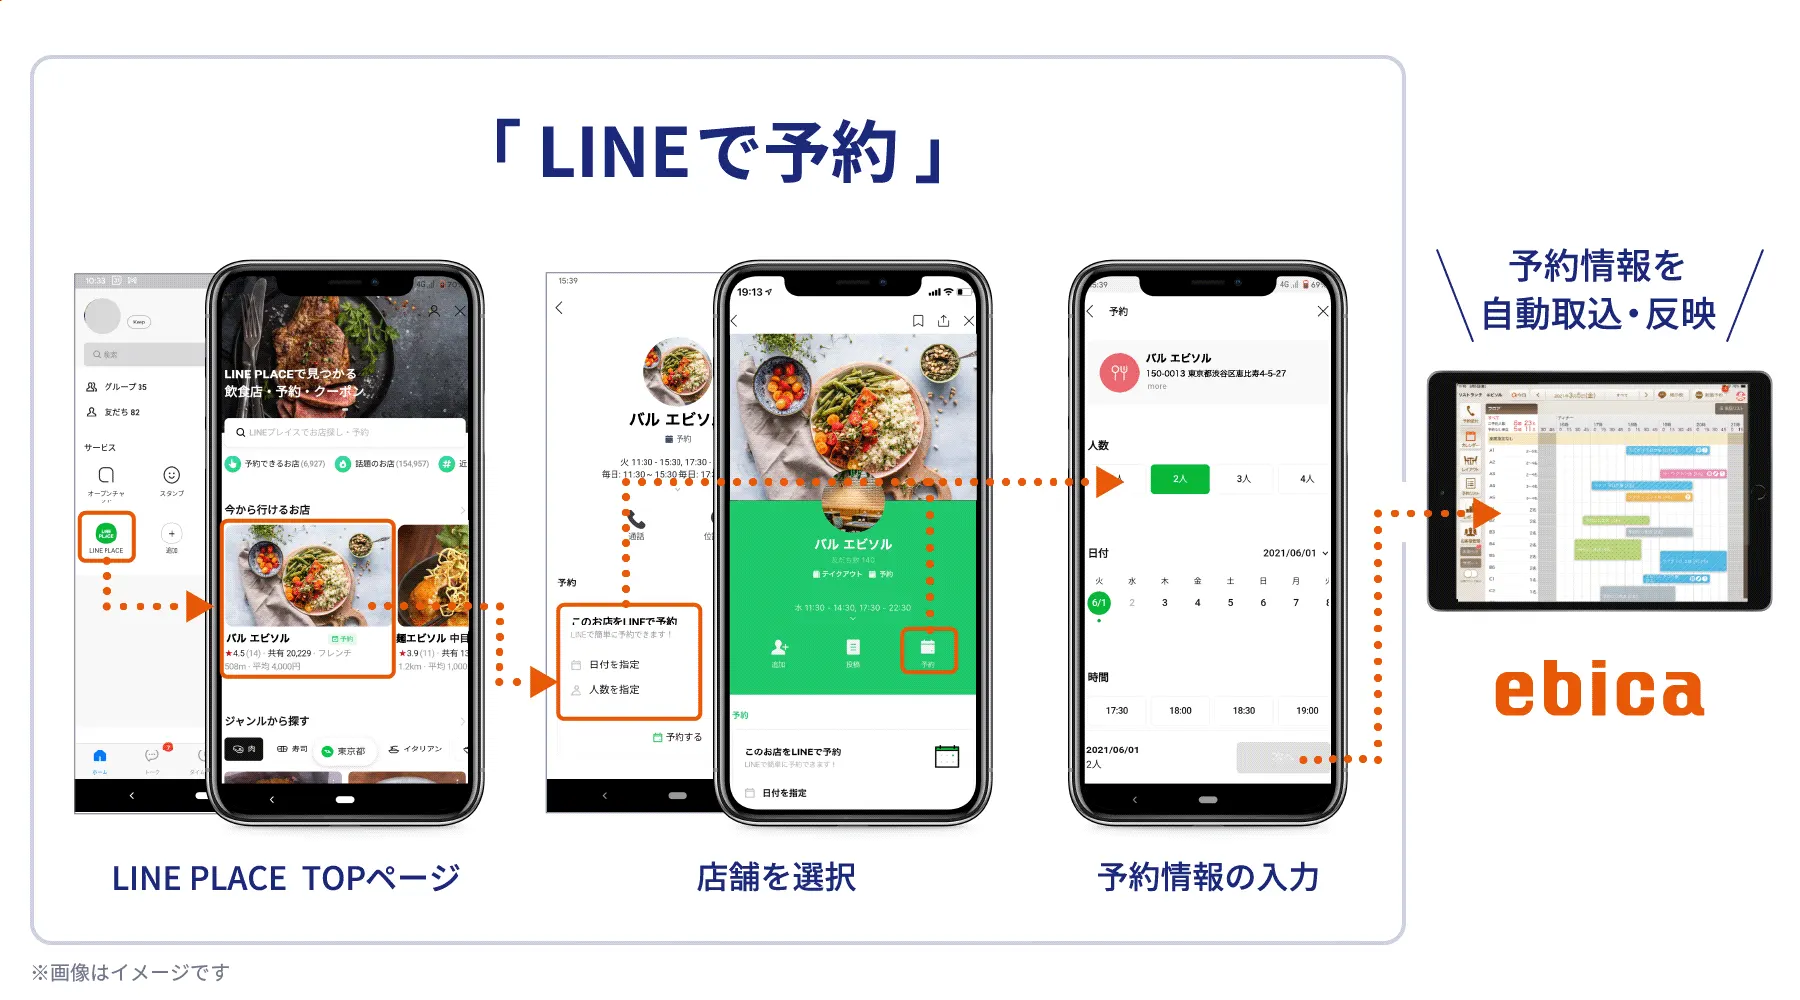 「ebica」×「LINEで予約」の連携図